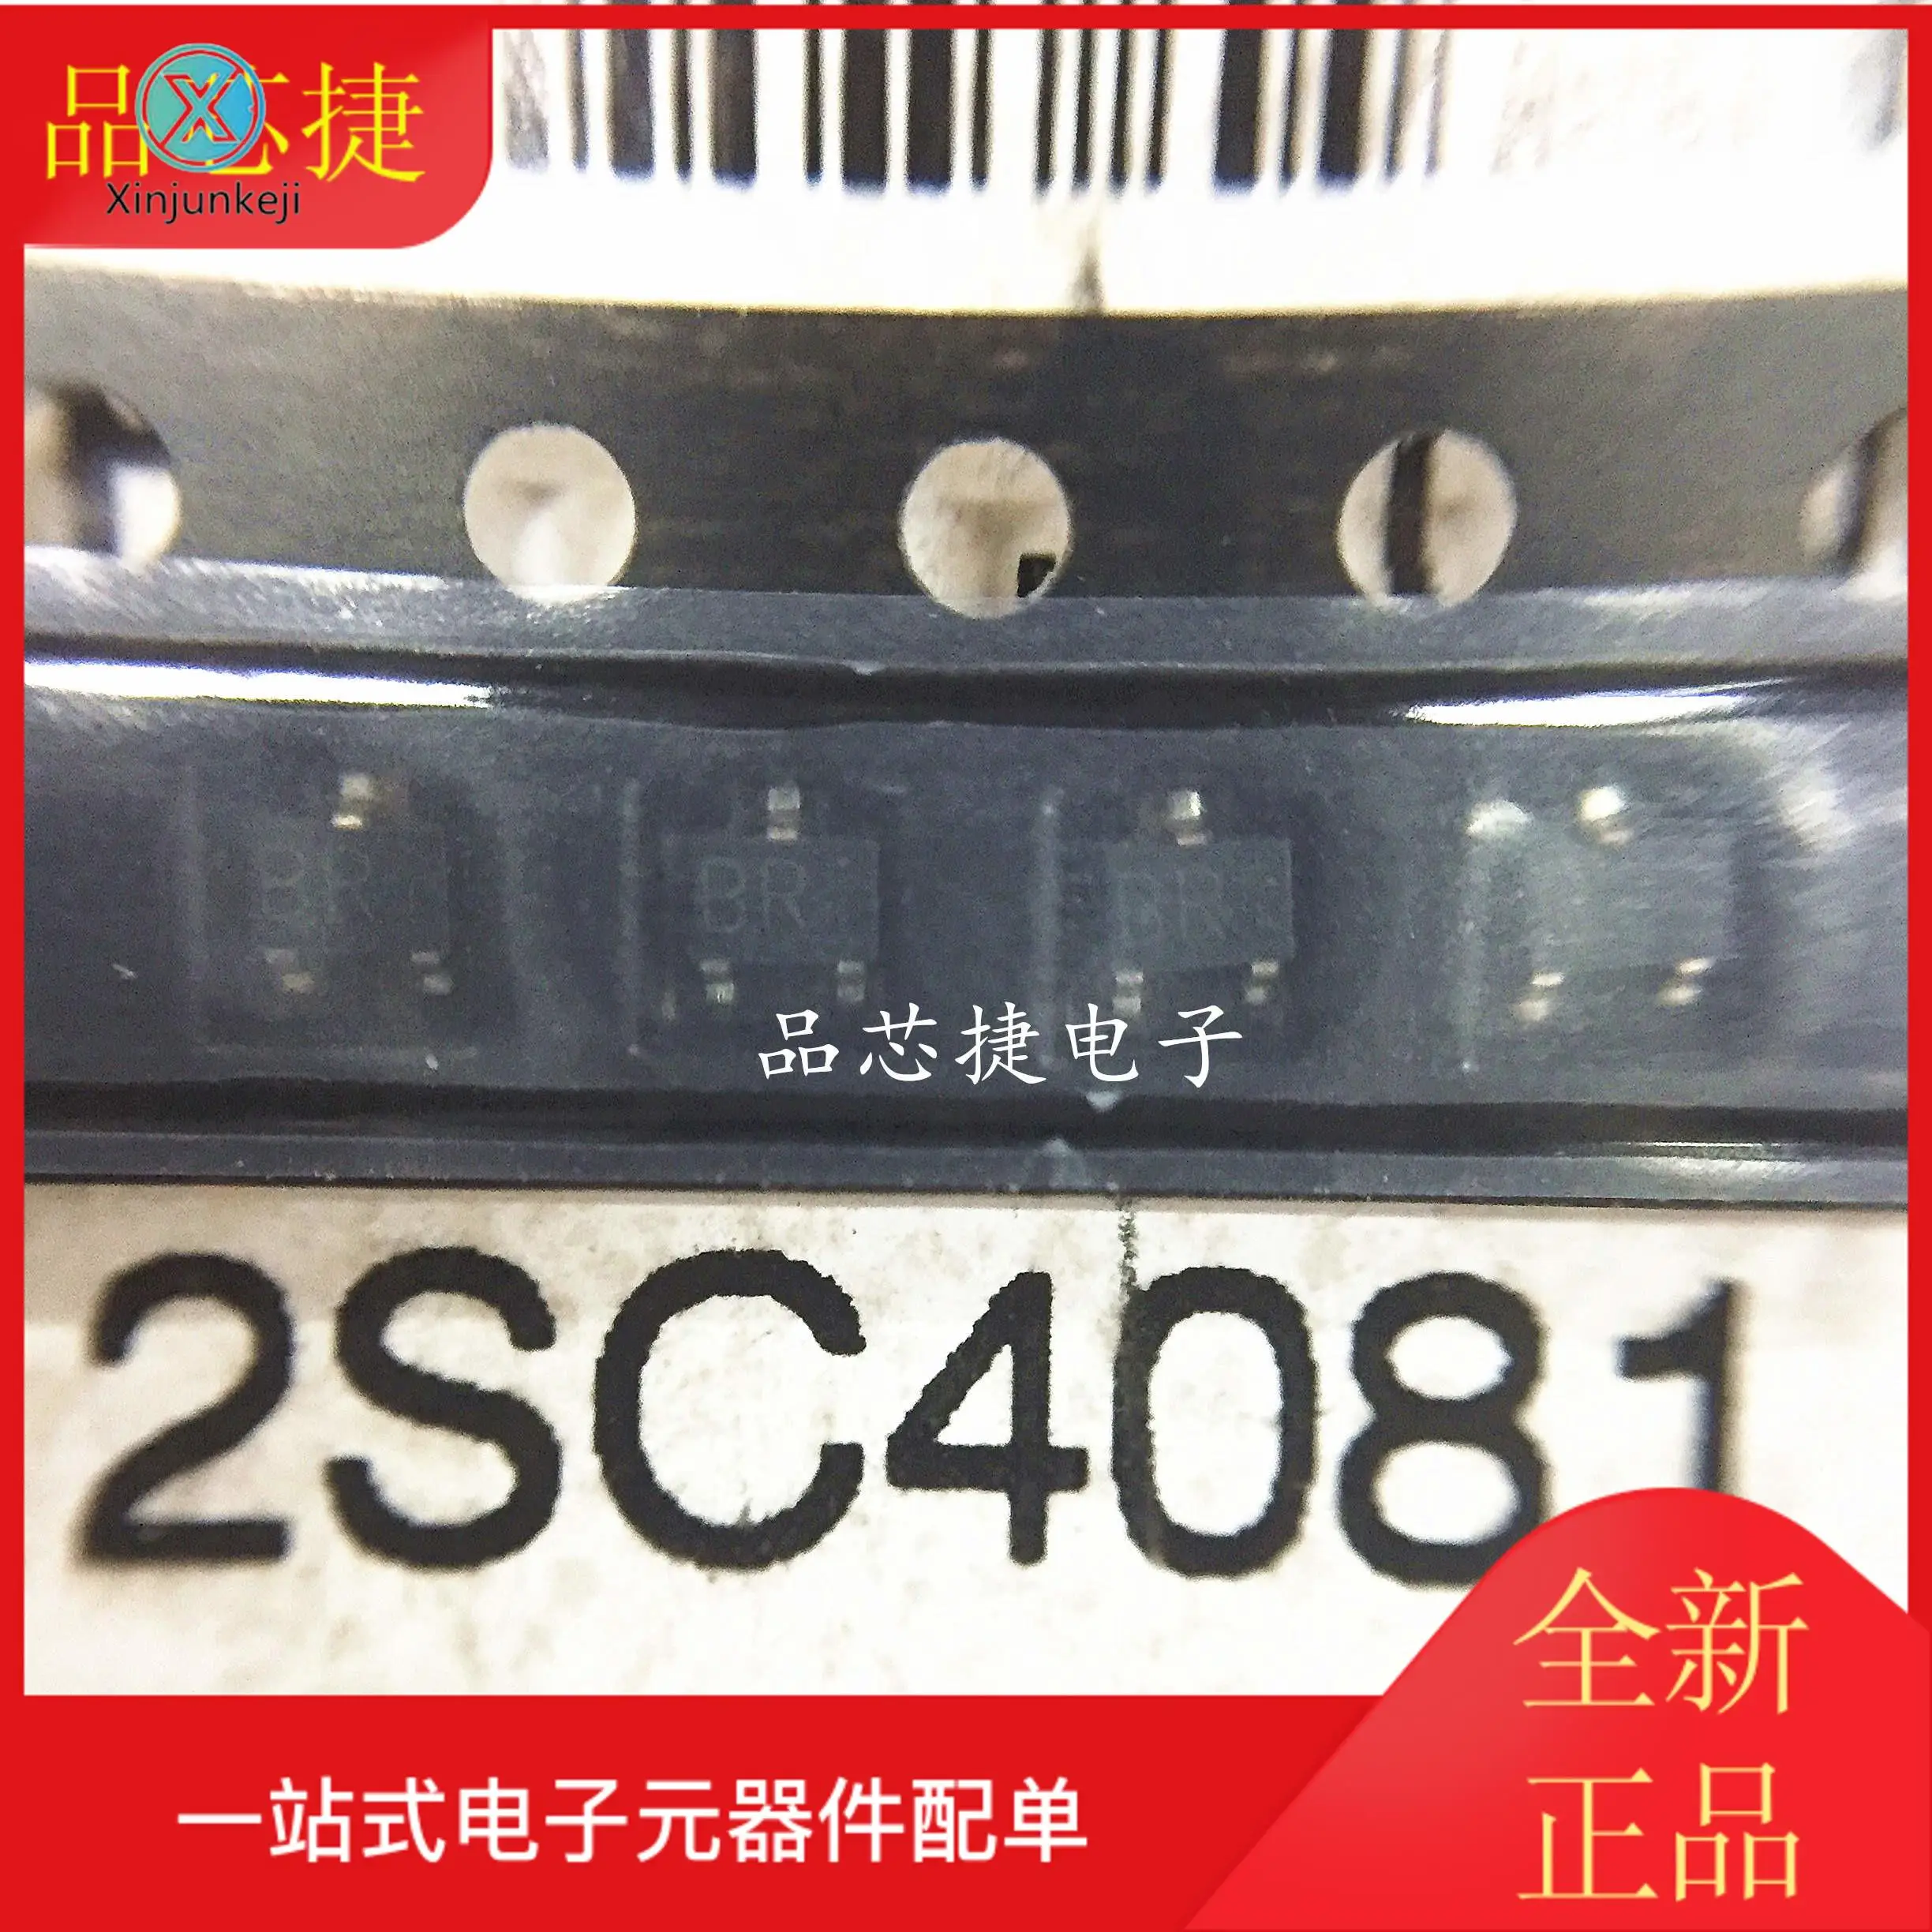 

Оригинальный Новый 2SC4081T506R 2SC4081 Silkscreen BR SOT323 транзисторный Триод, 50 шт.